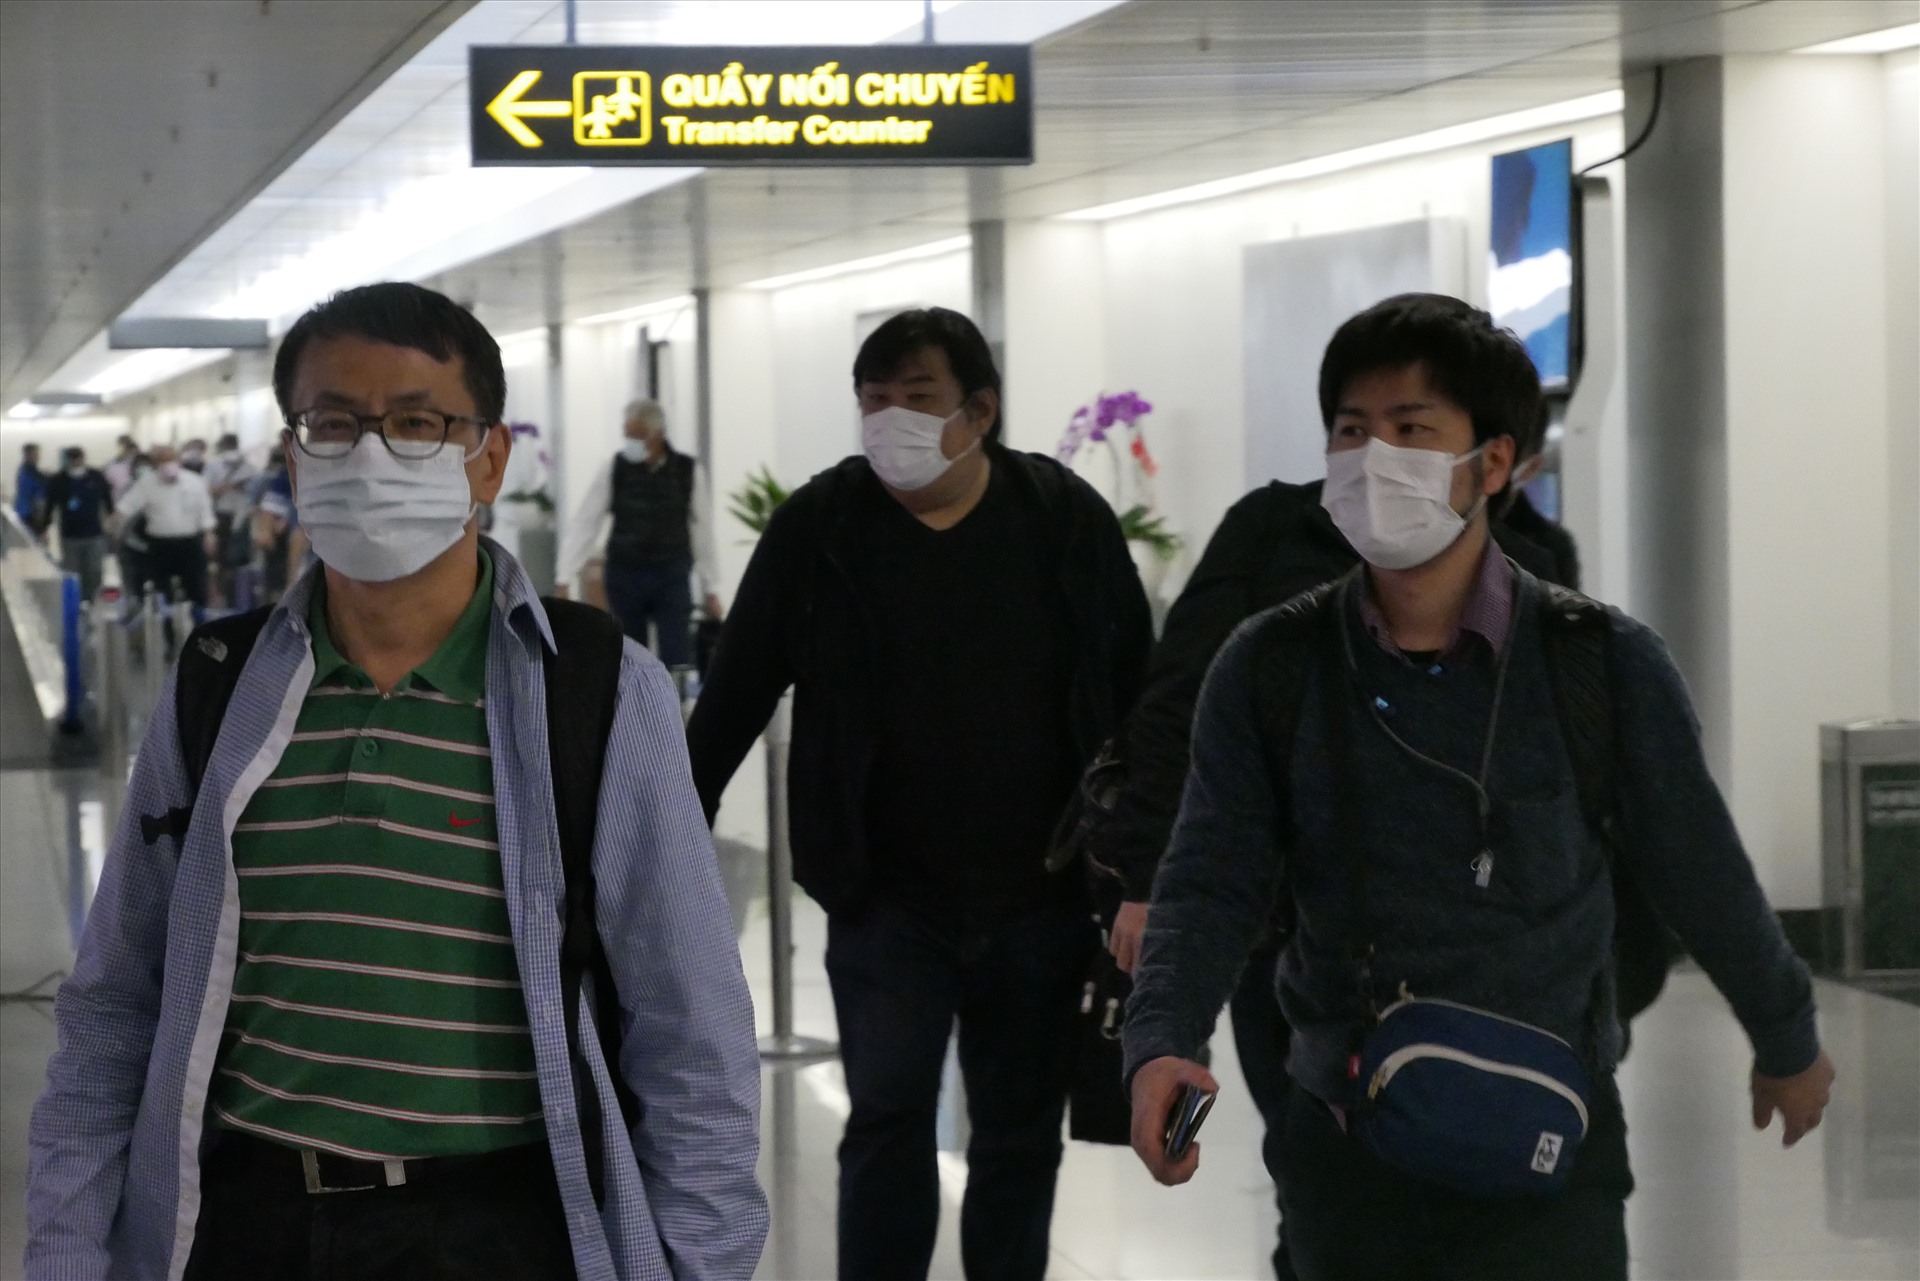 Theo ghi nhận tại sân bay Tân Sơn Nhất trong buổi chiều 26.2, công tác phòng chống dịch cúm virus Covid-19 đang được triển khai chủ động, nghiêm ngặt theo quy trình từ Bộ Y tế và Cục Hàng không.